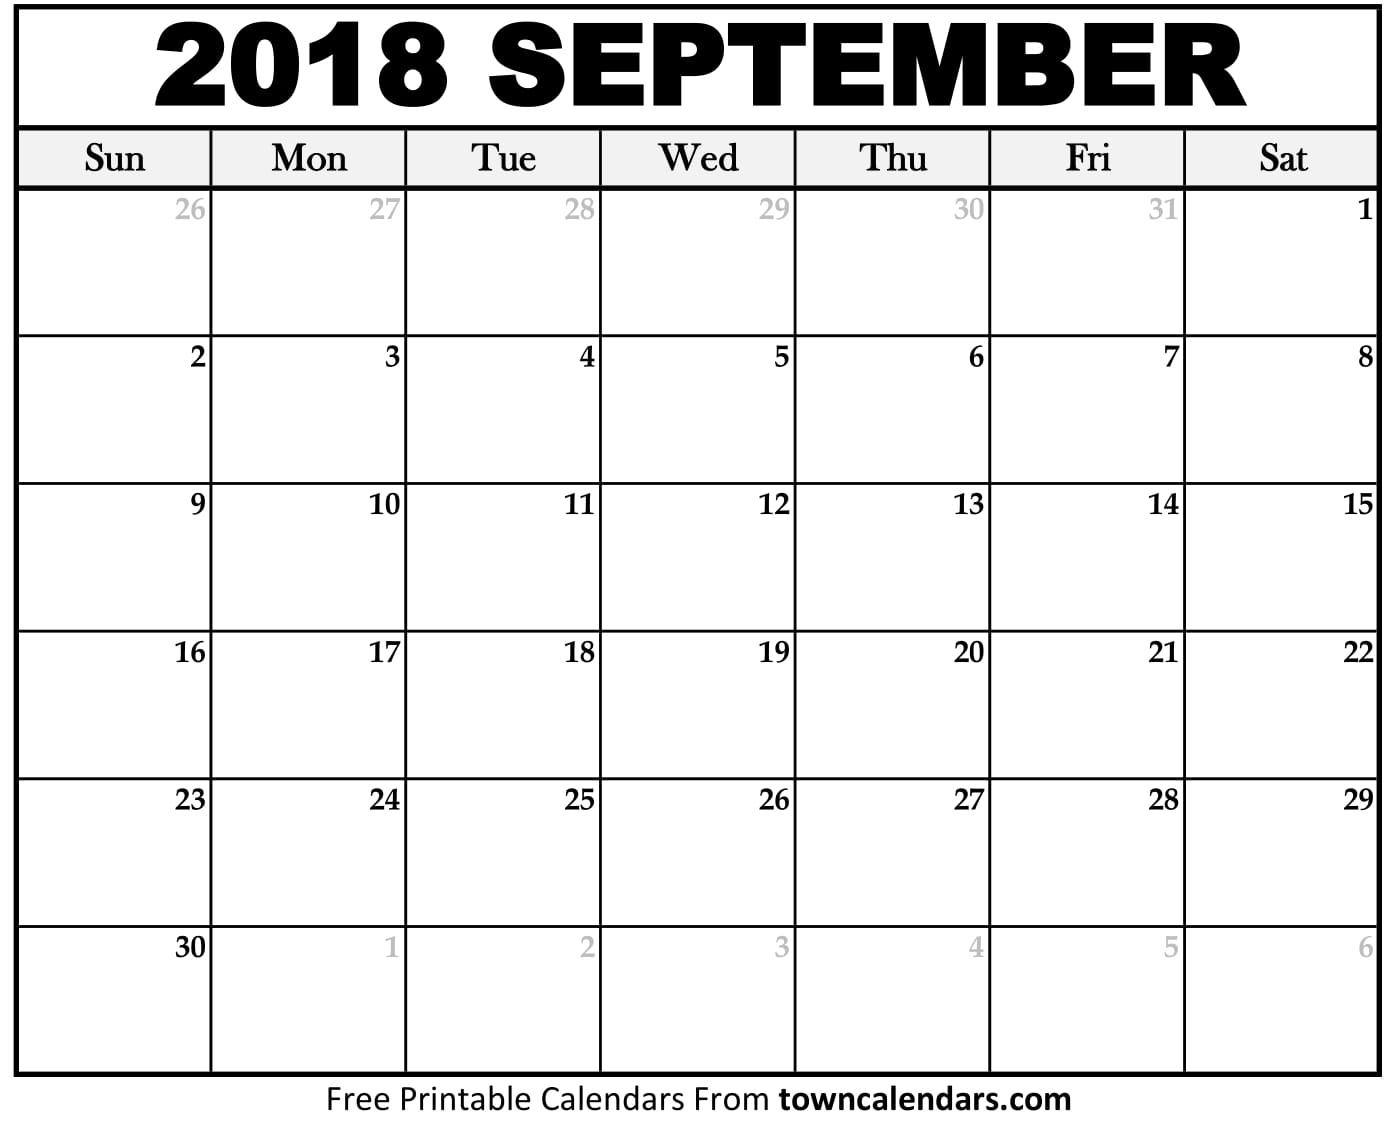 september-2018-calendar-free-download-aashe